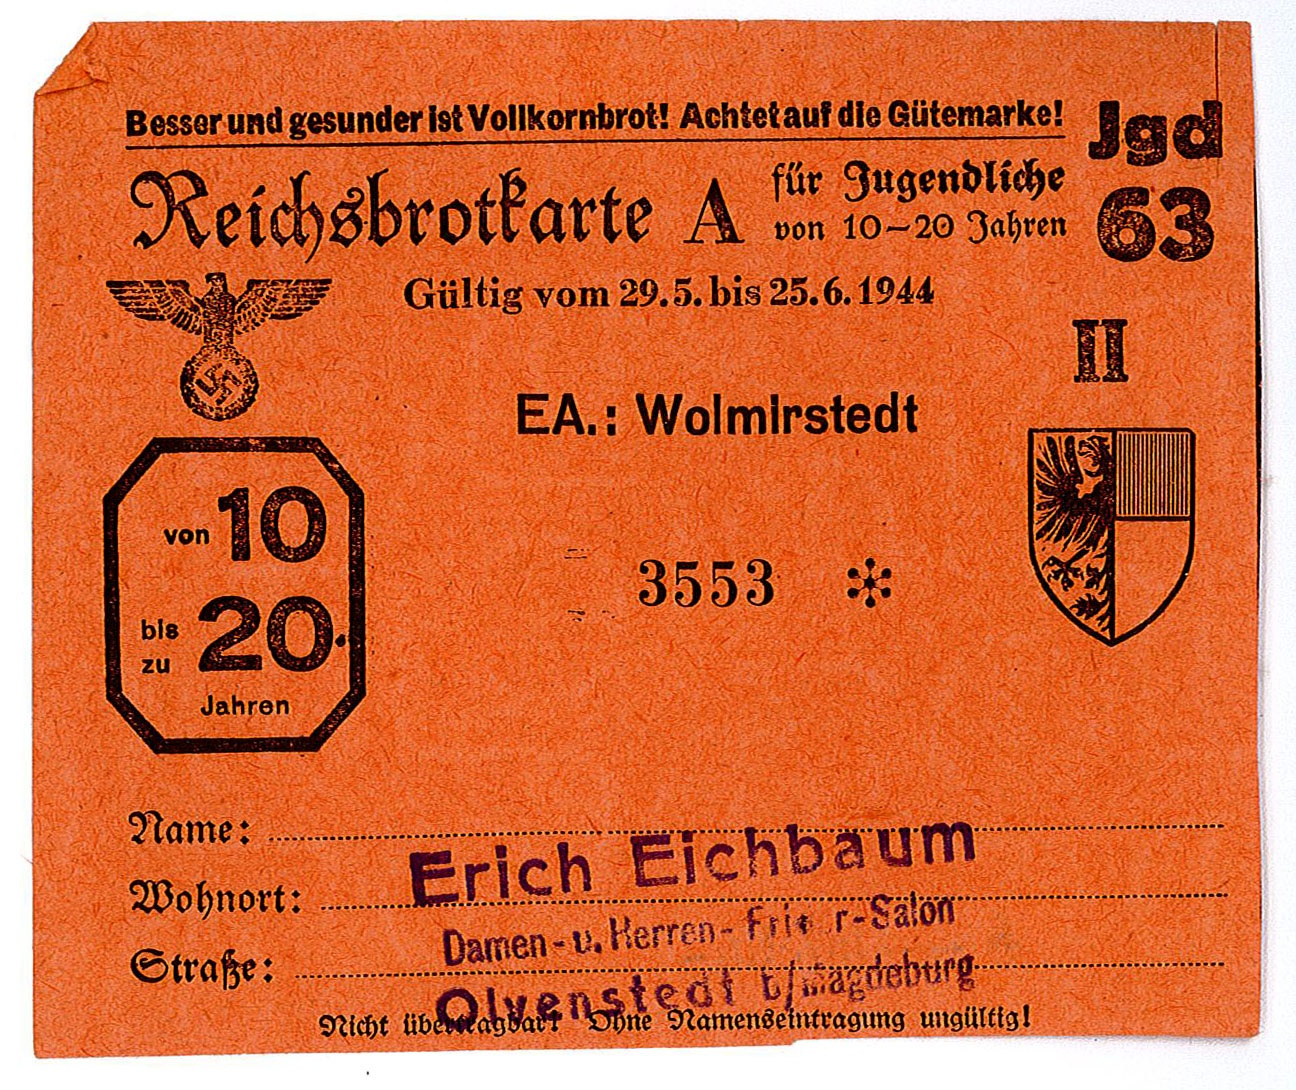 Lebensmittelkarte: Reichsbrotkarte für Jugendliche von 10 bis 20 Jahren, Mai/Juni 1944 (Museum Wolmirstedt RR-F)